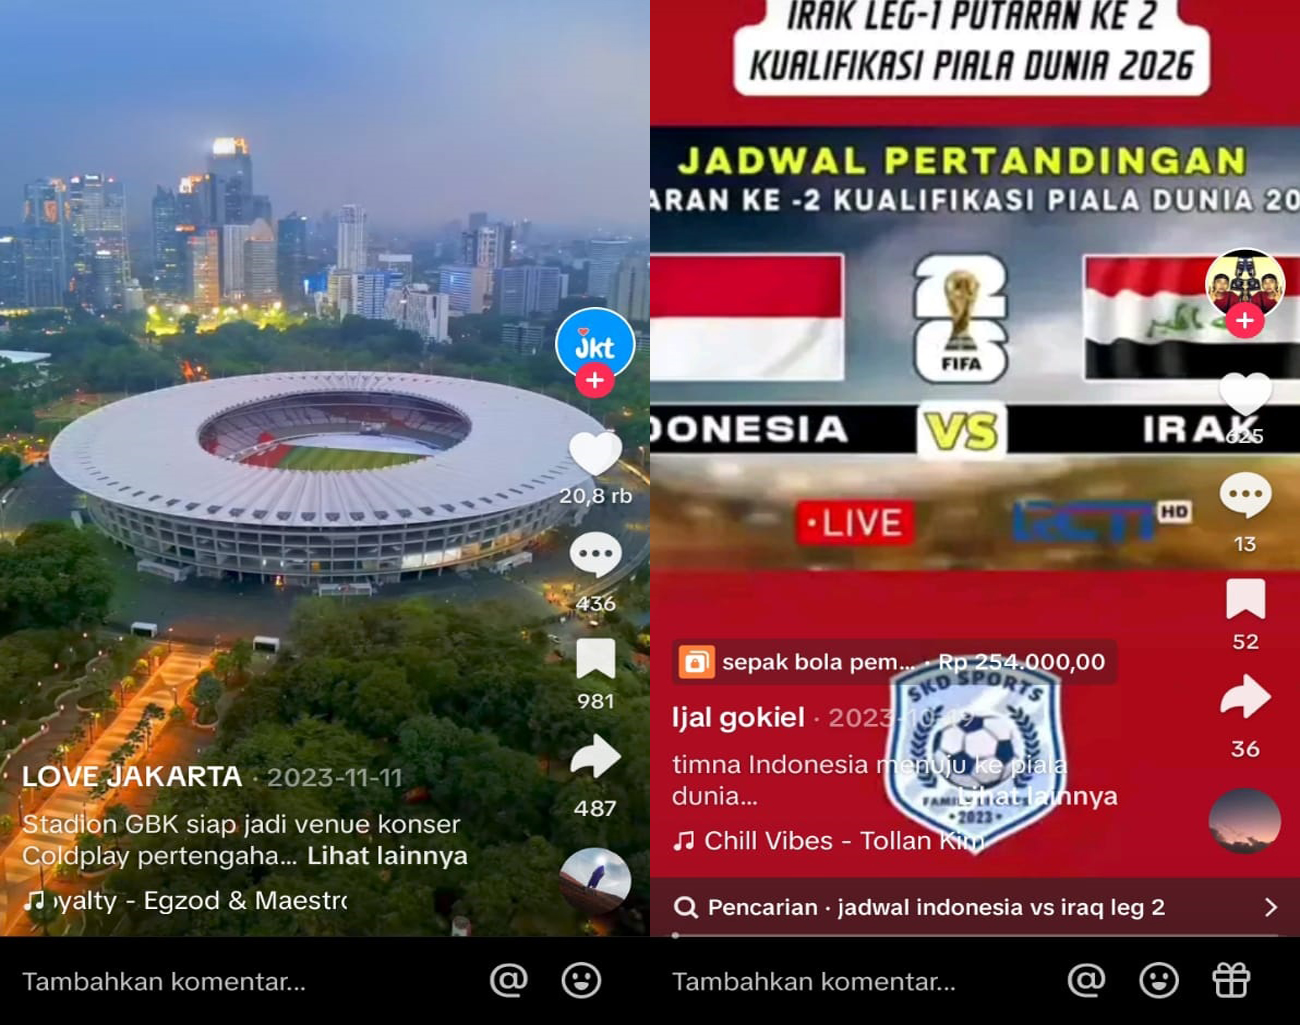 Timnas Indonesia Siap Rayakan Kemenangan di GBK, Lolos Ronde 3 Kualifikasi Piala Dunia 2026, Indonesia vs Irak